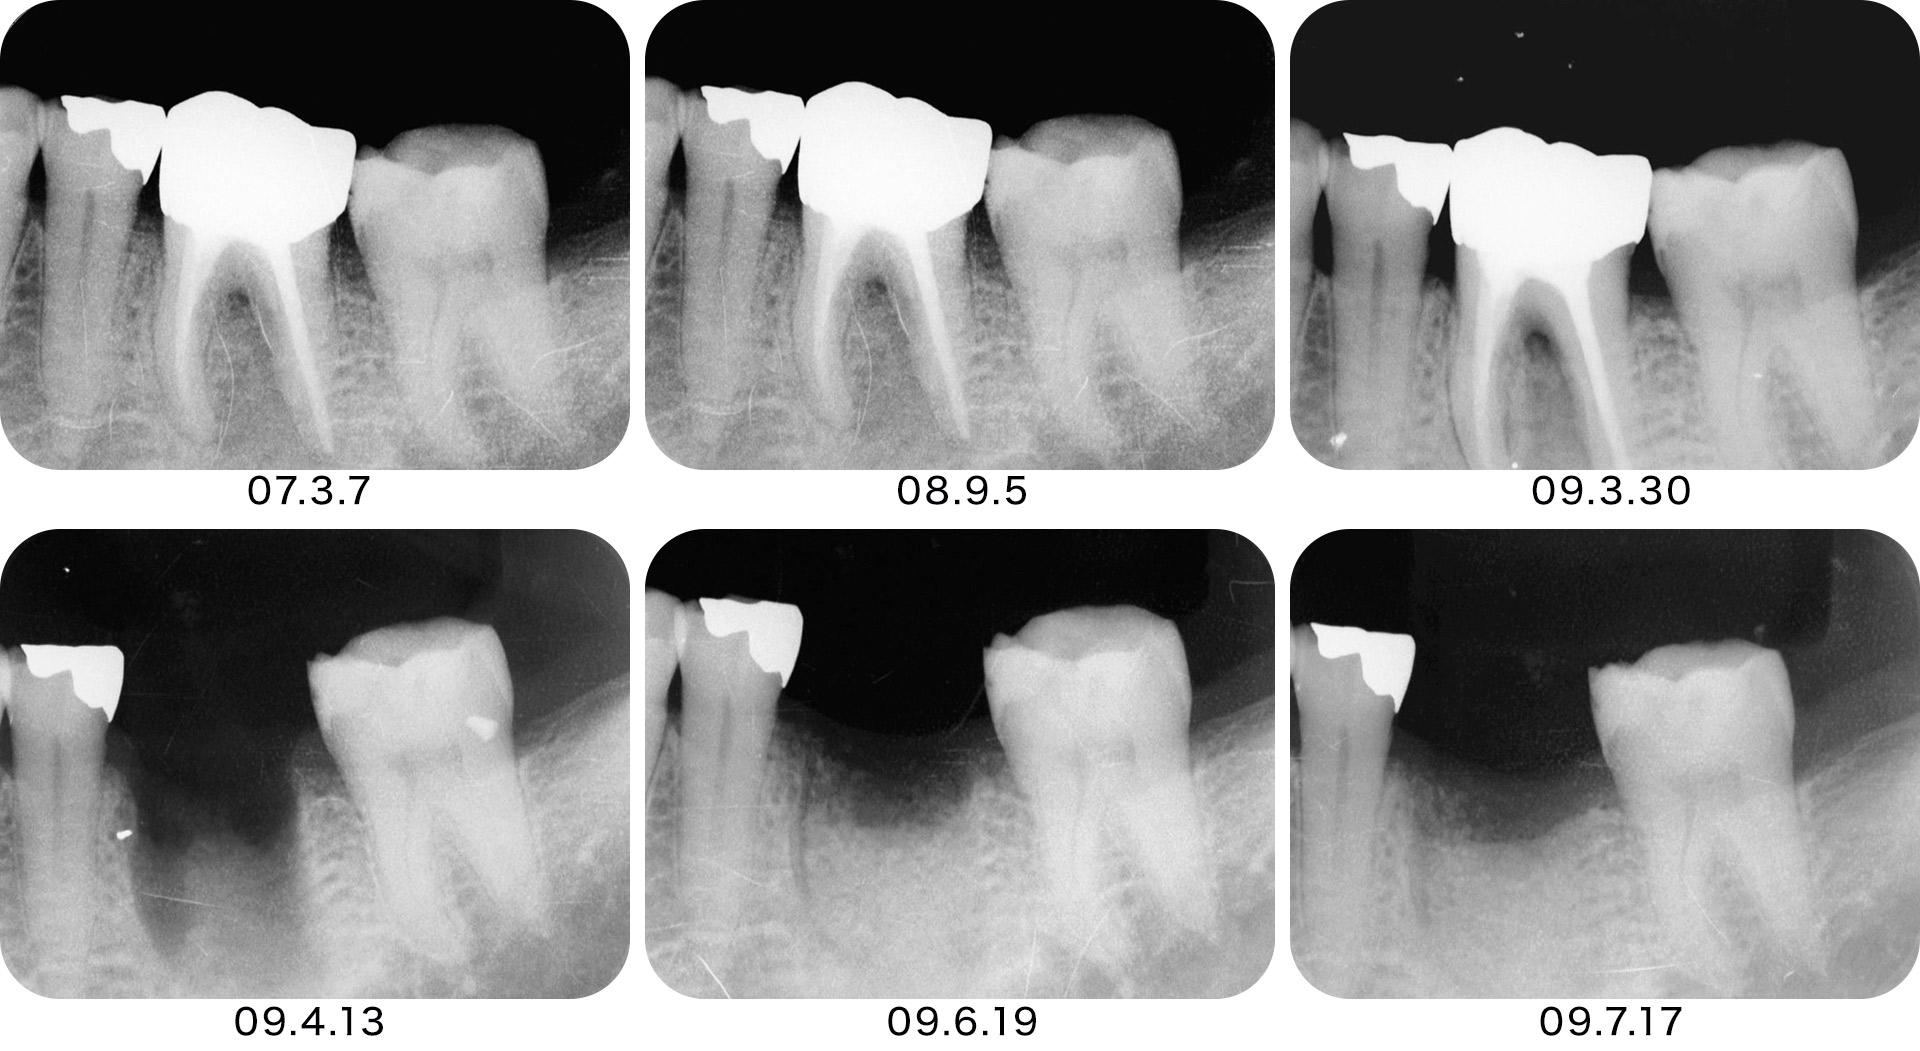 インプラント処置として即時埋入を行うのか待時埋入を行うのかということも重要な診断となる。特に複根管の場合は抜歯窩の状態をよく考慮する必要がある。